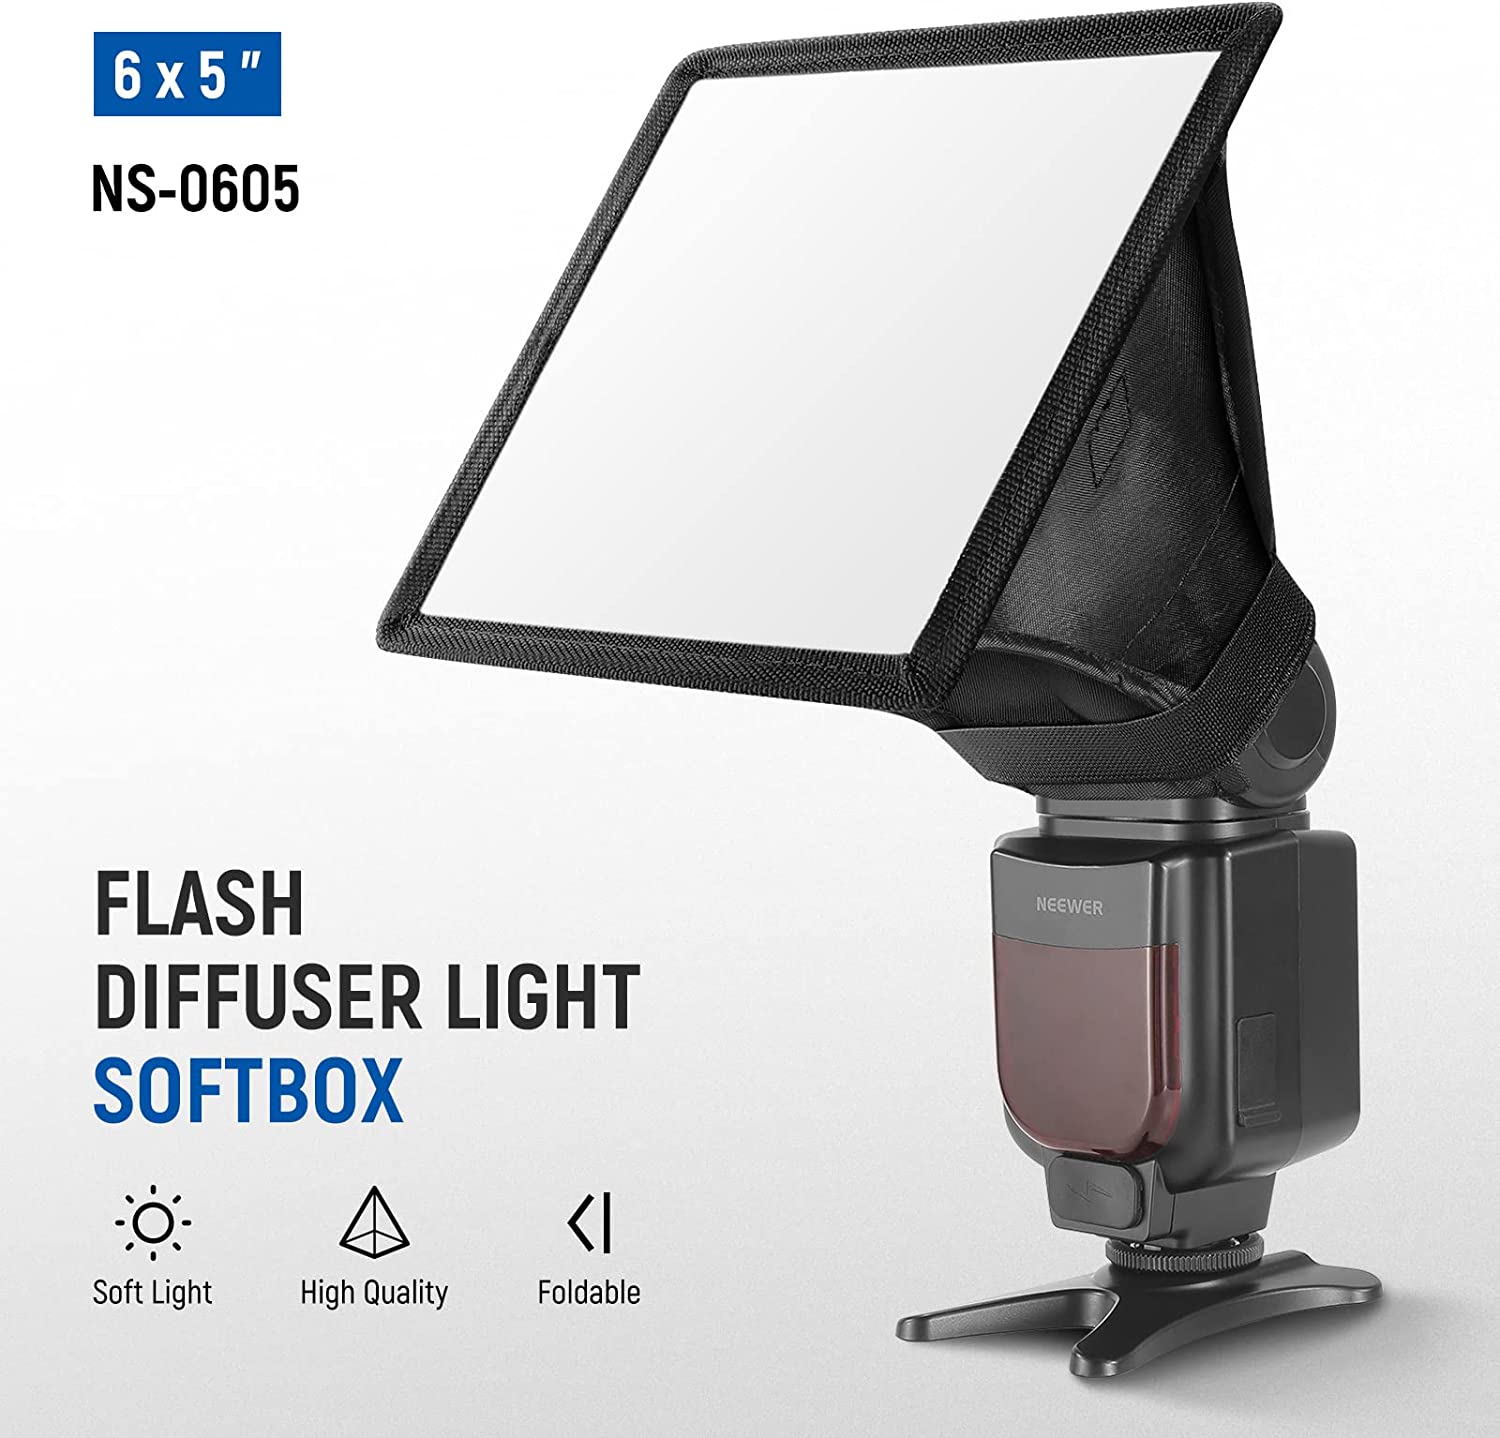 Difusor de Luz para Flash de 15.2 x 12.7 cm